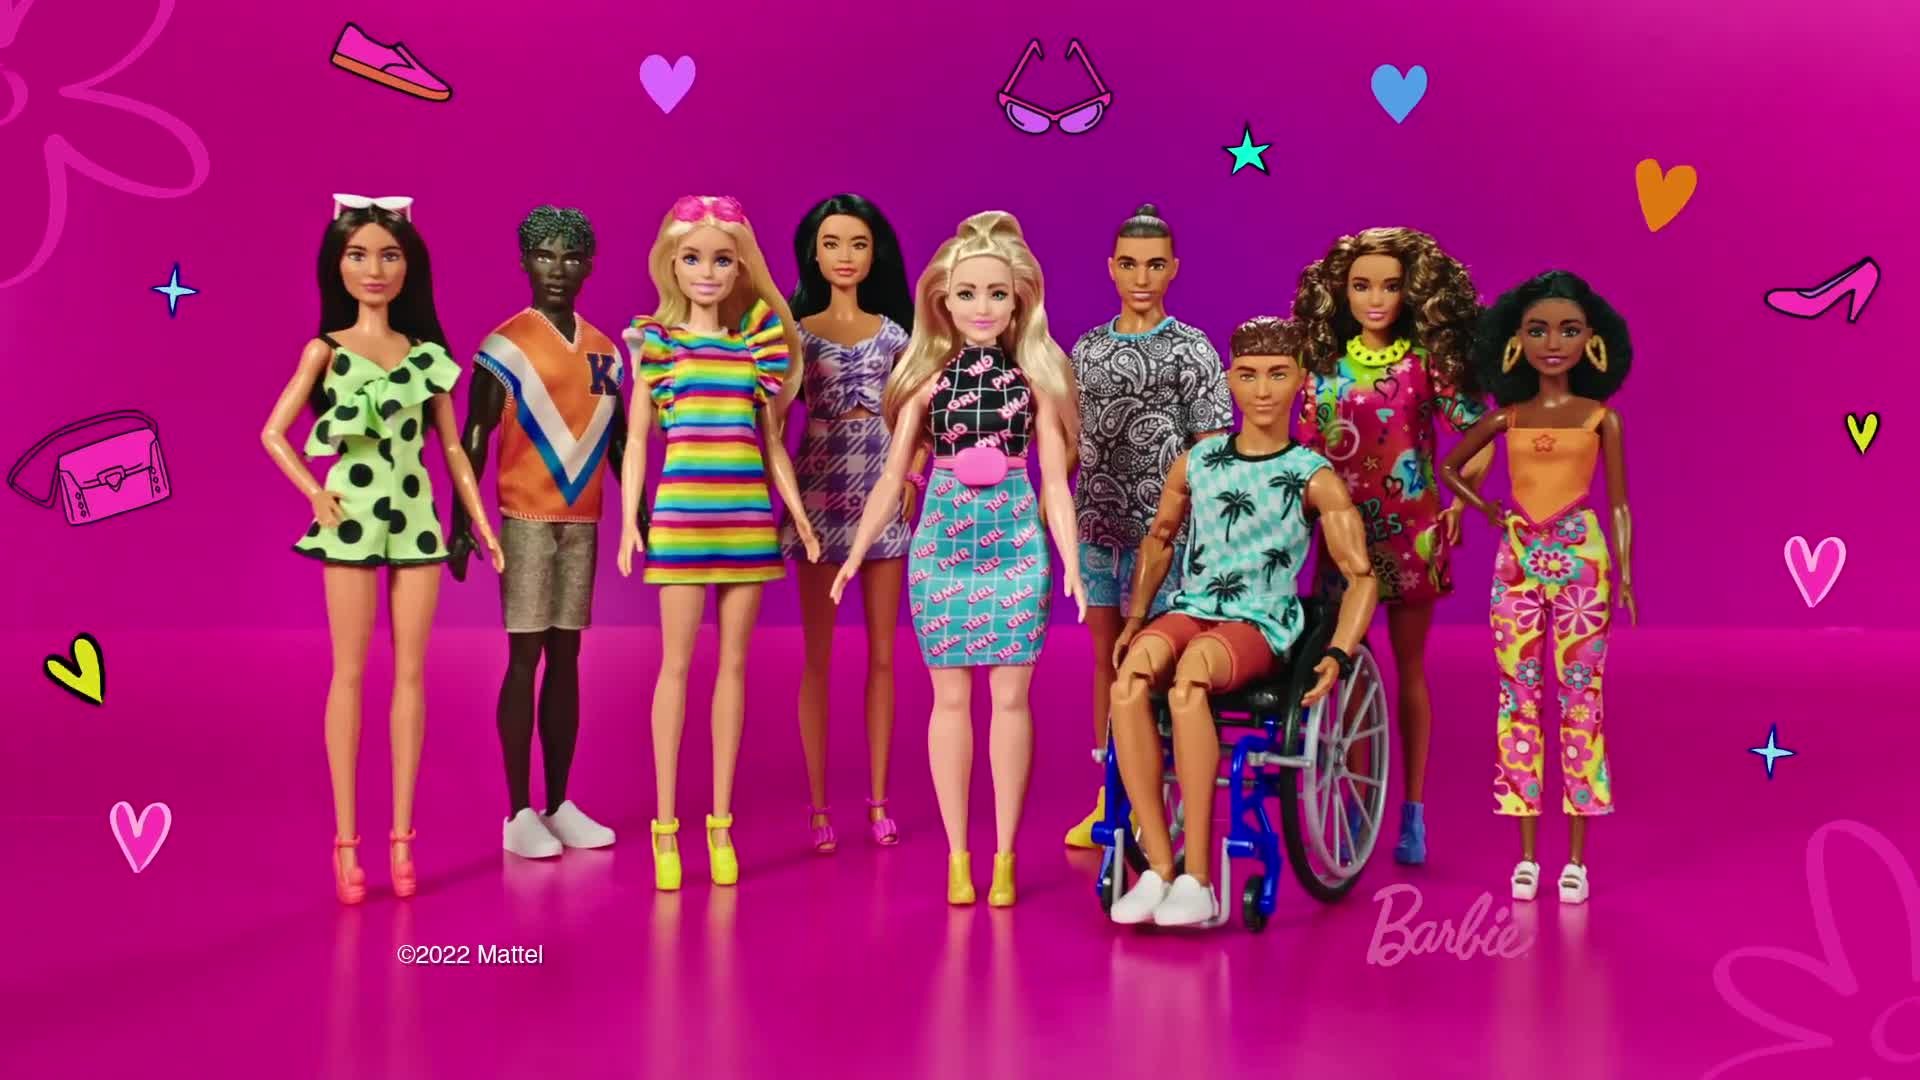 Buy Barbie Fashionistas Ken Doll Assortment - 12inch/30cm, Dolls